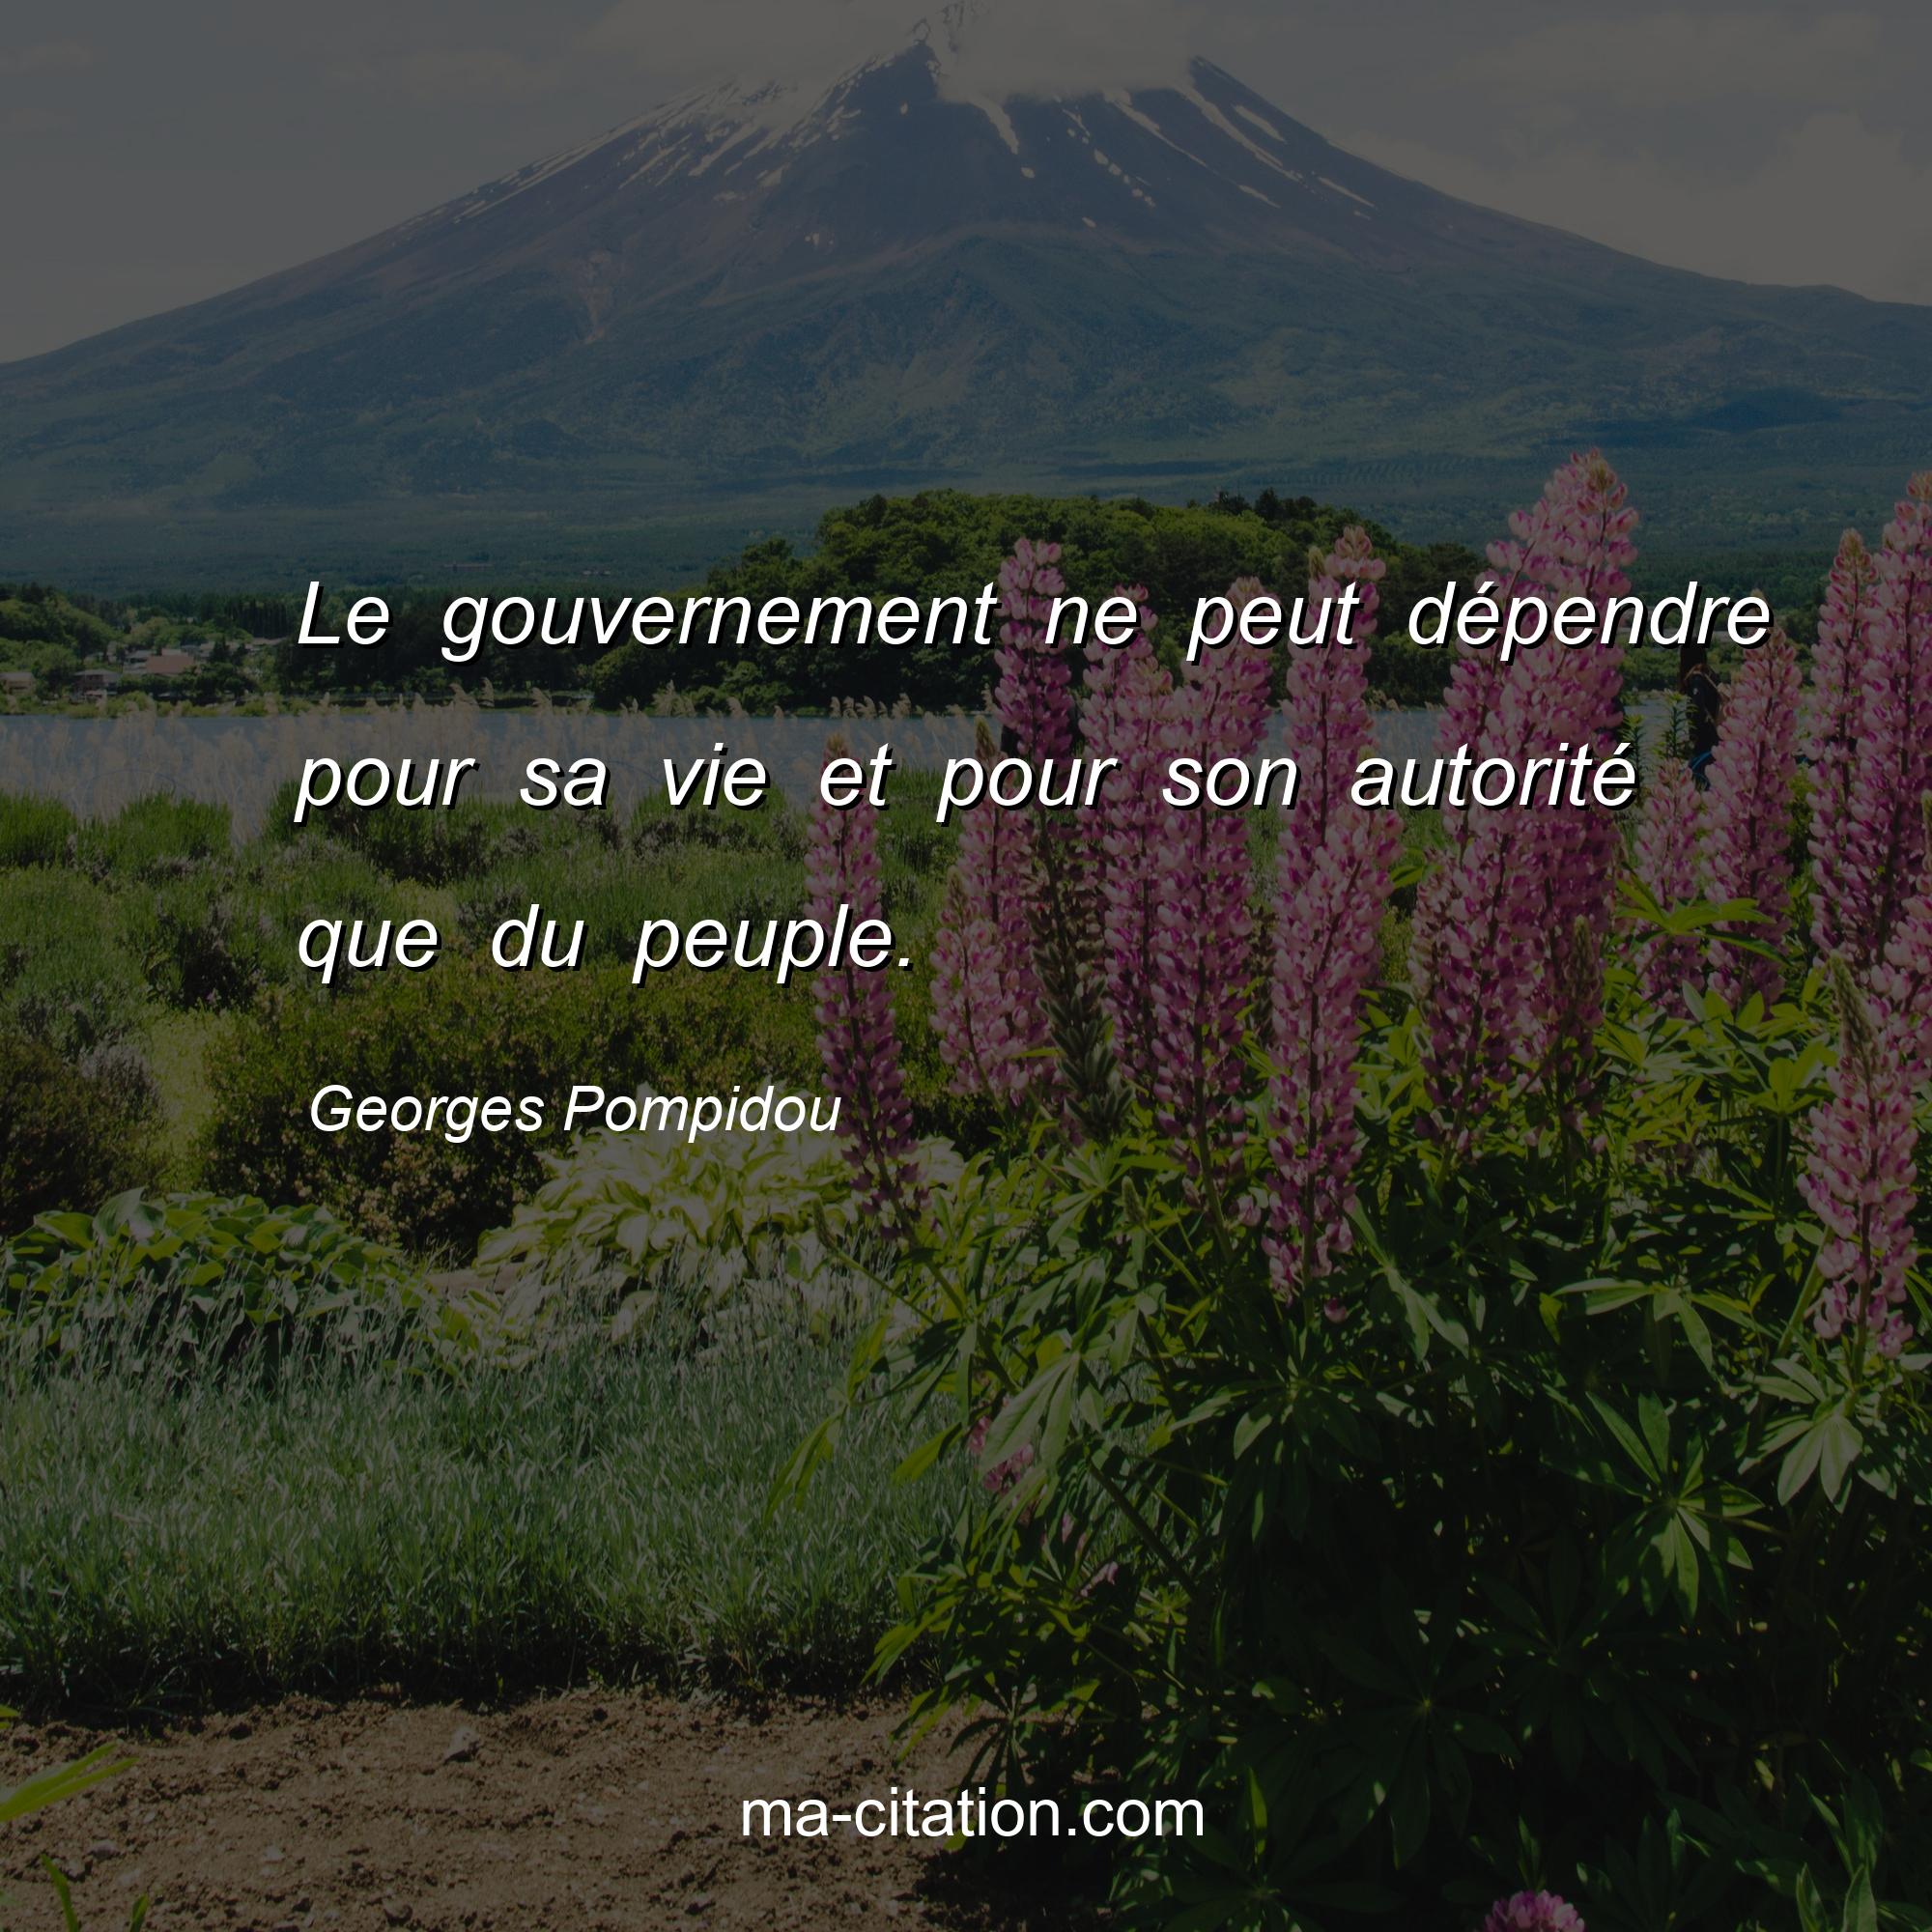 Georges Pompidou : Le gouvernement ne peut dépendre pour sa vie et pour son autorité que du peuple.